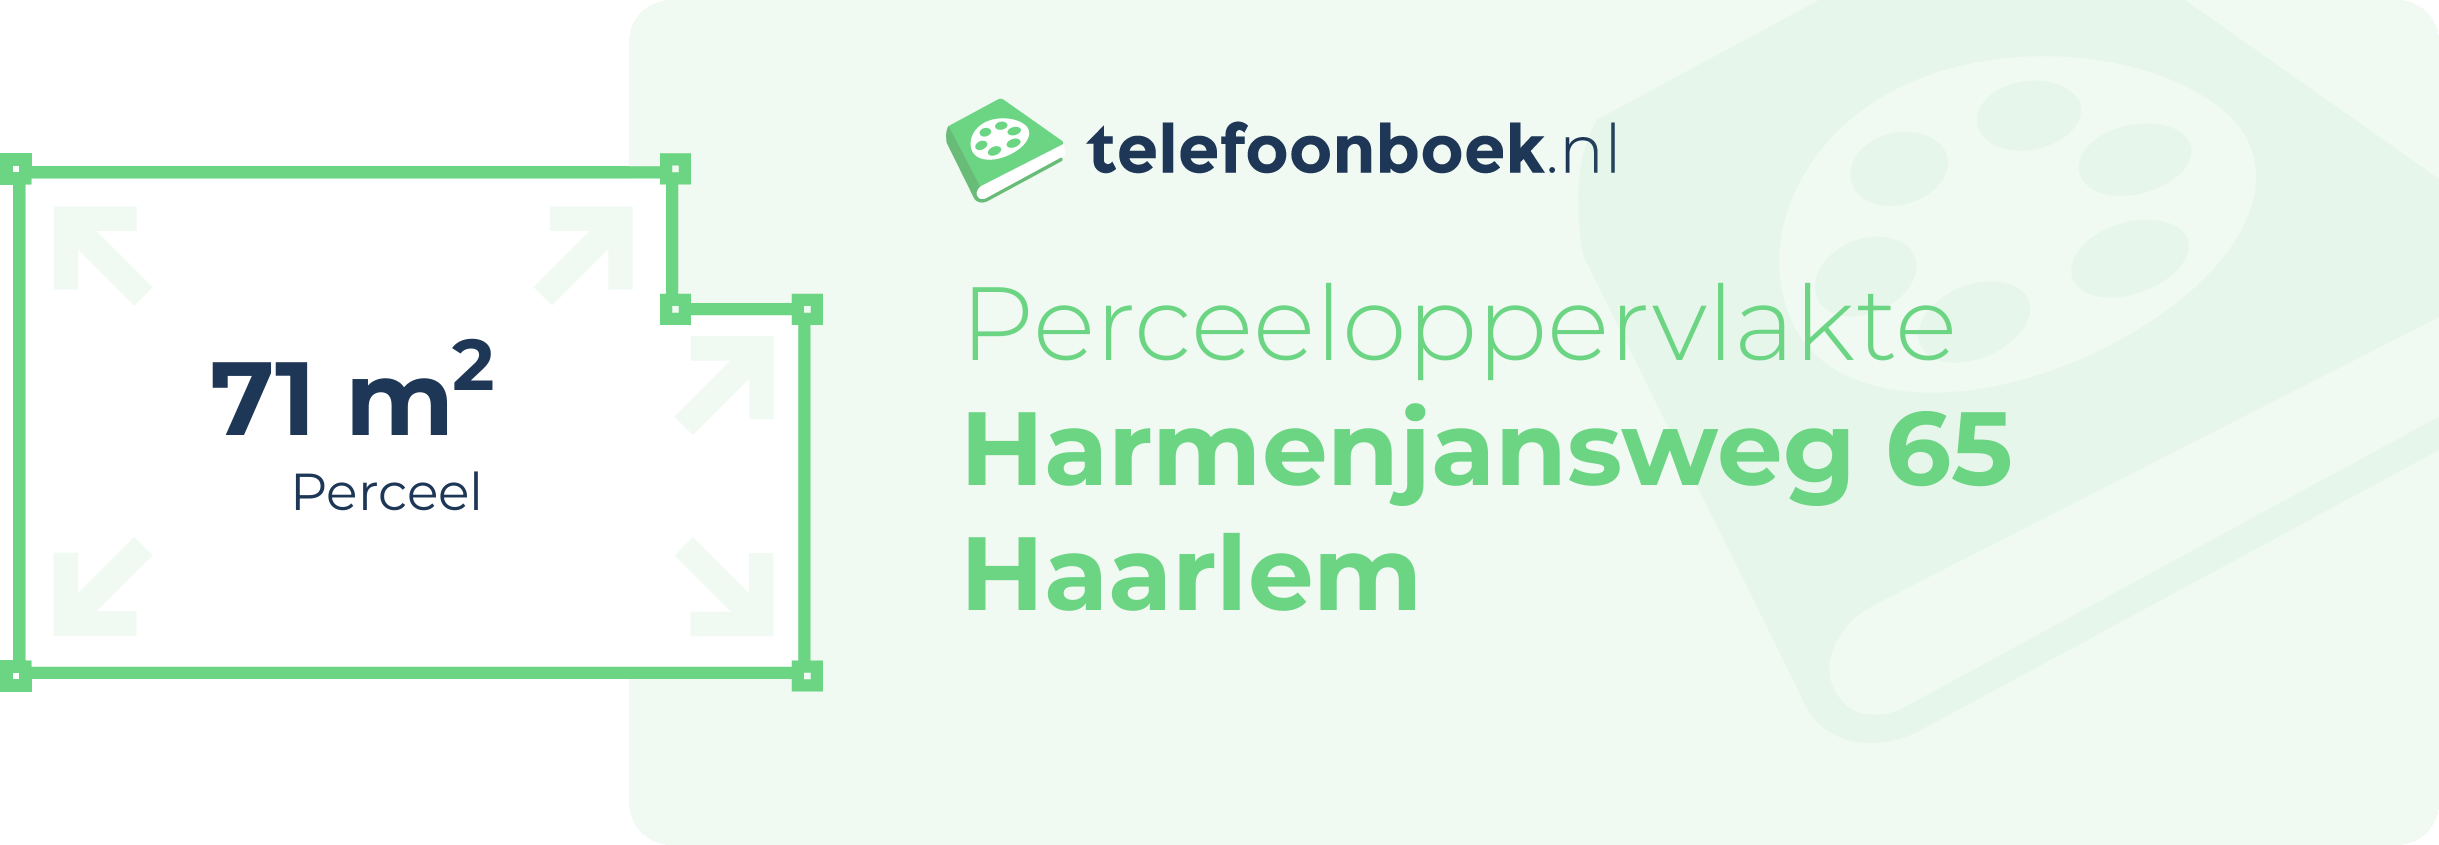 Perceeloppervlakte Harmenjansweg 65 Haarlem